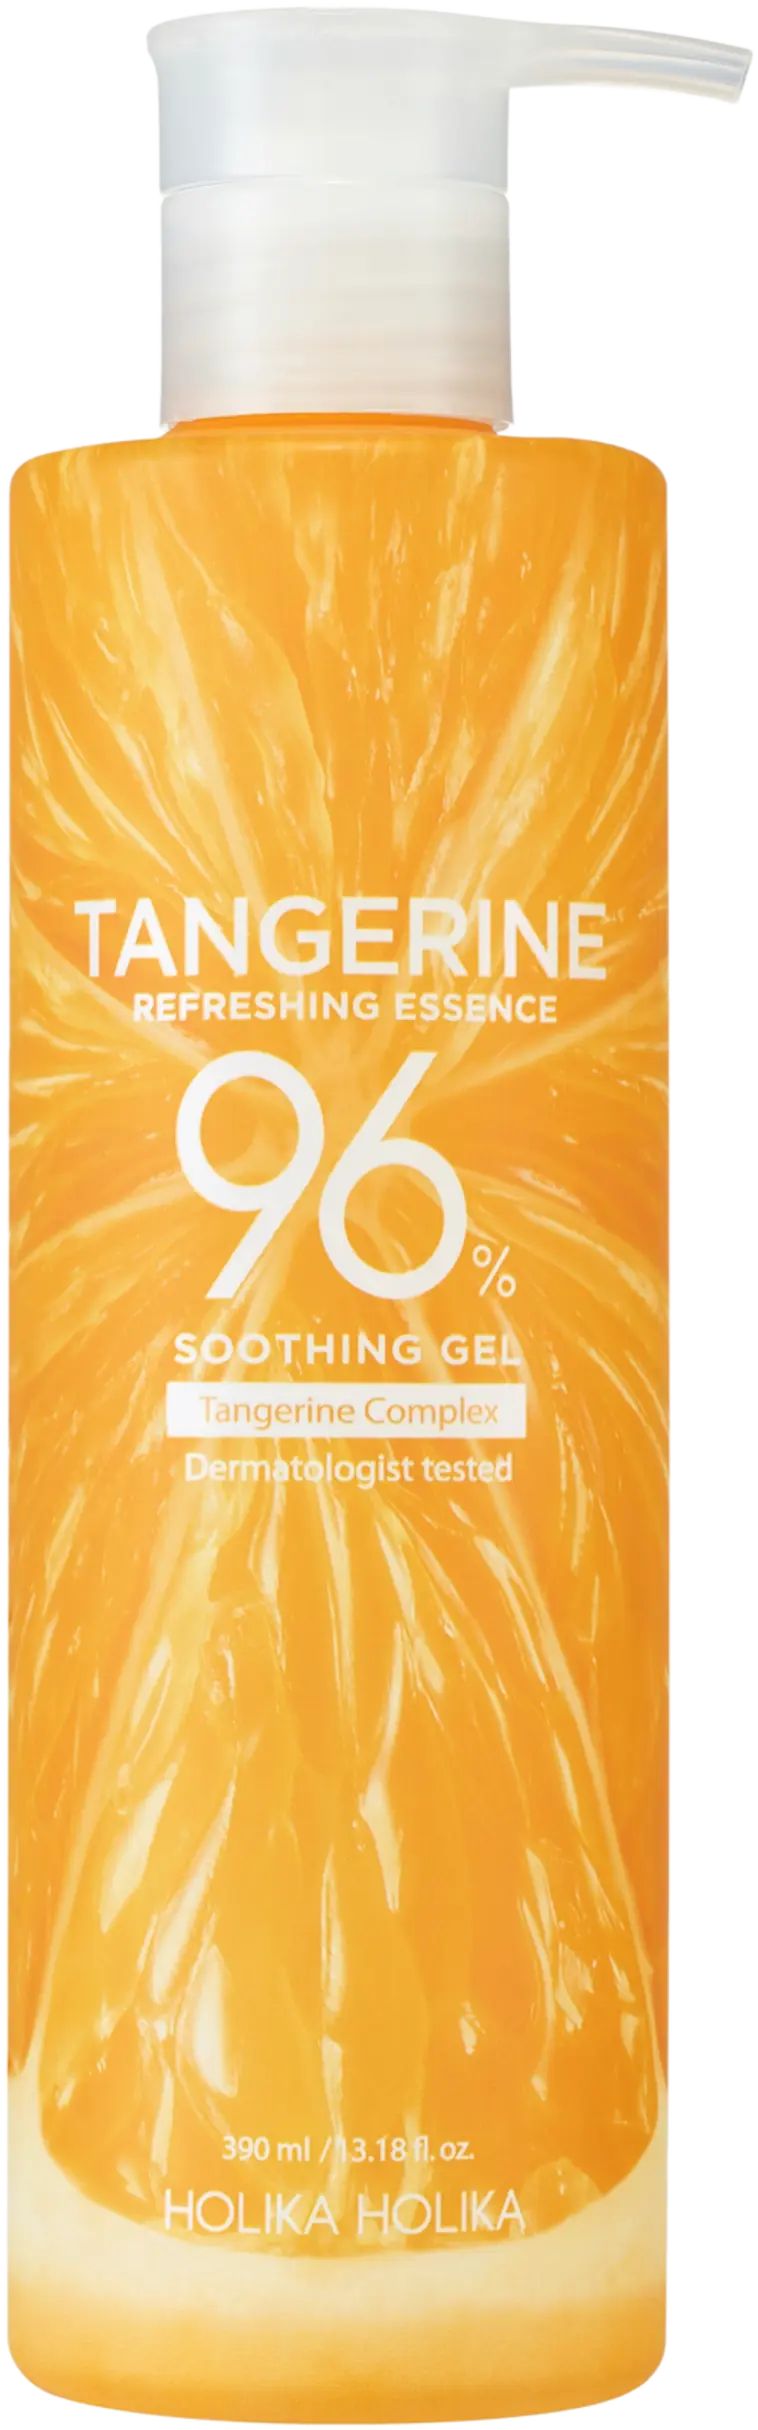 Holika Holika Tangerine Soothing geeli 390ml